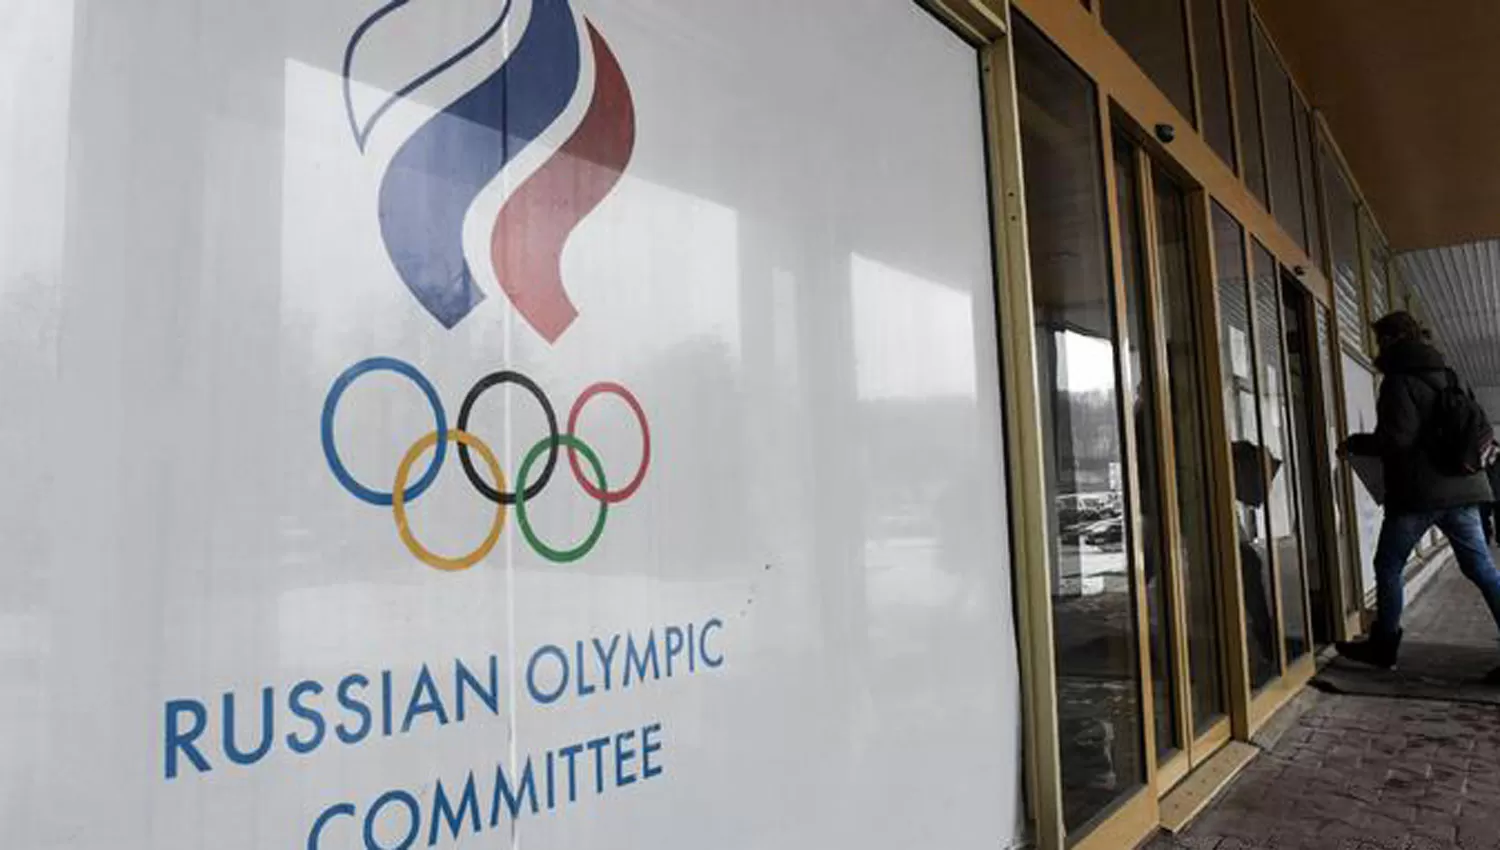 La Corte Arbitral del Deporte levantó suspensión de por vida de 28 atletas rusos